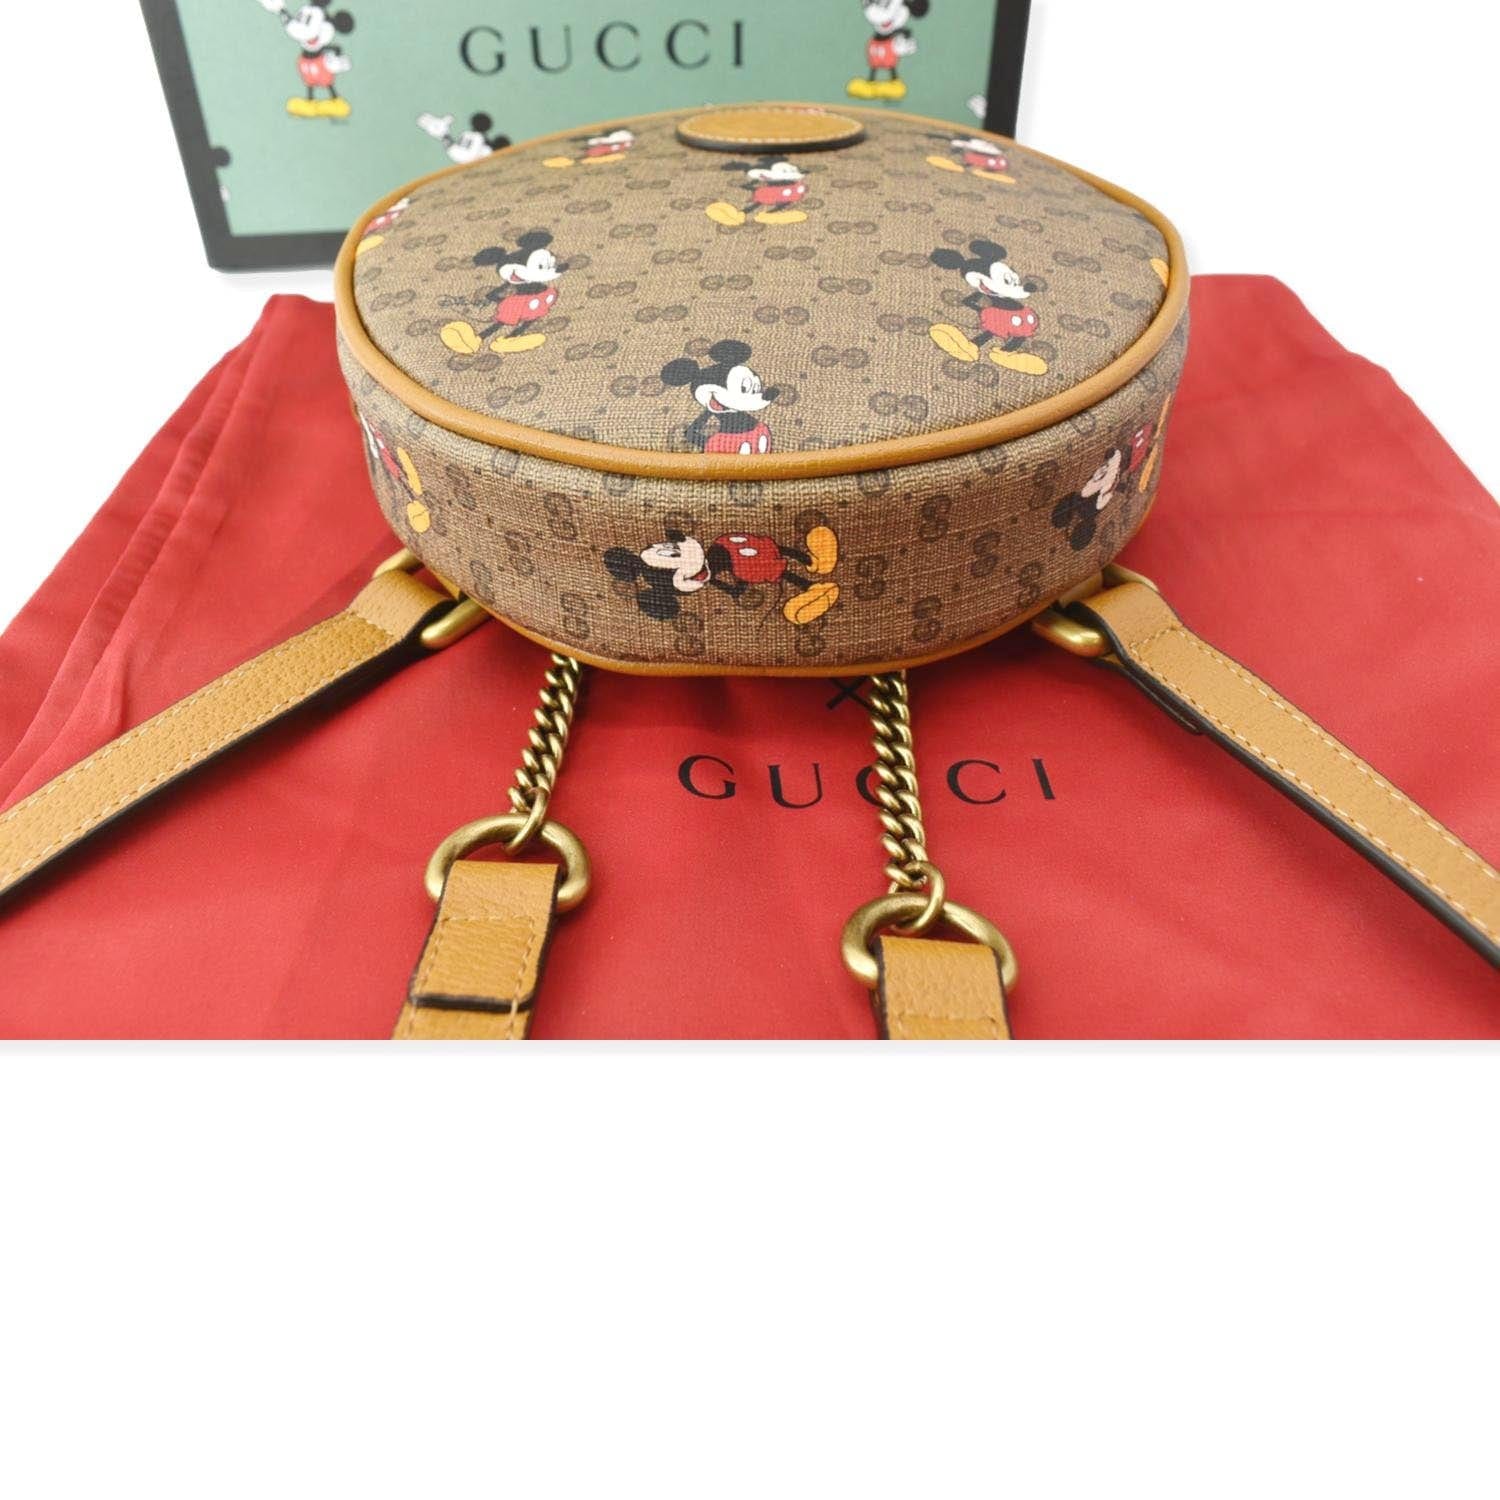 Gucci x Disney Card Case Mini GG Supreme Mickey Mouse Beige in